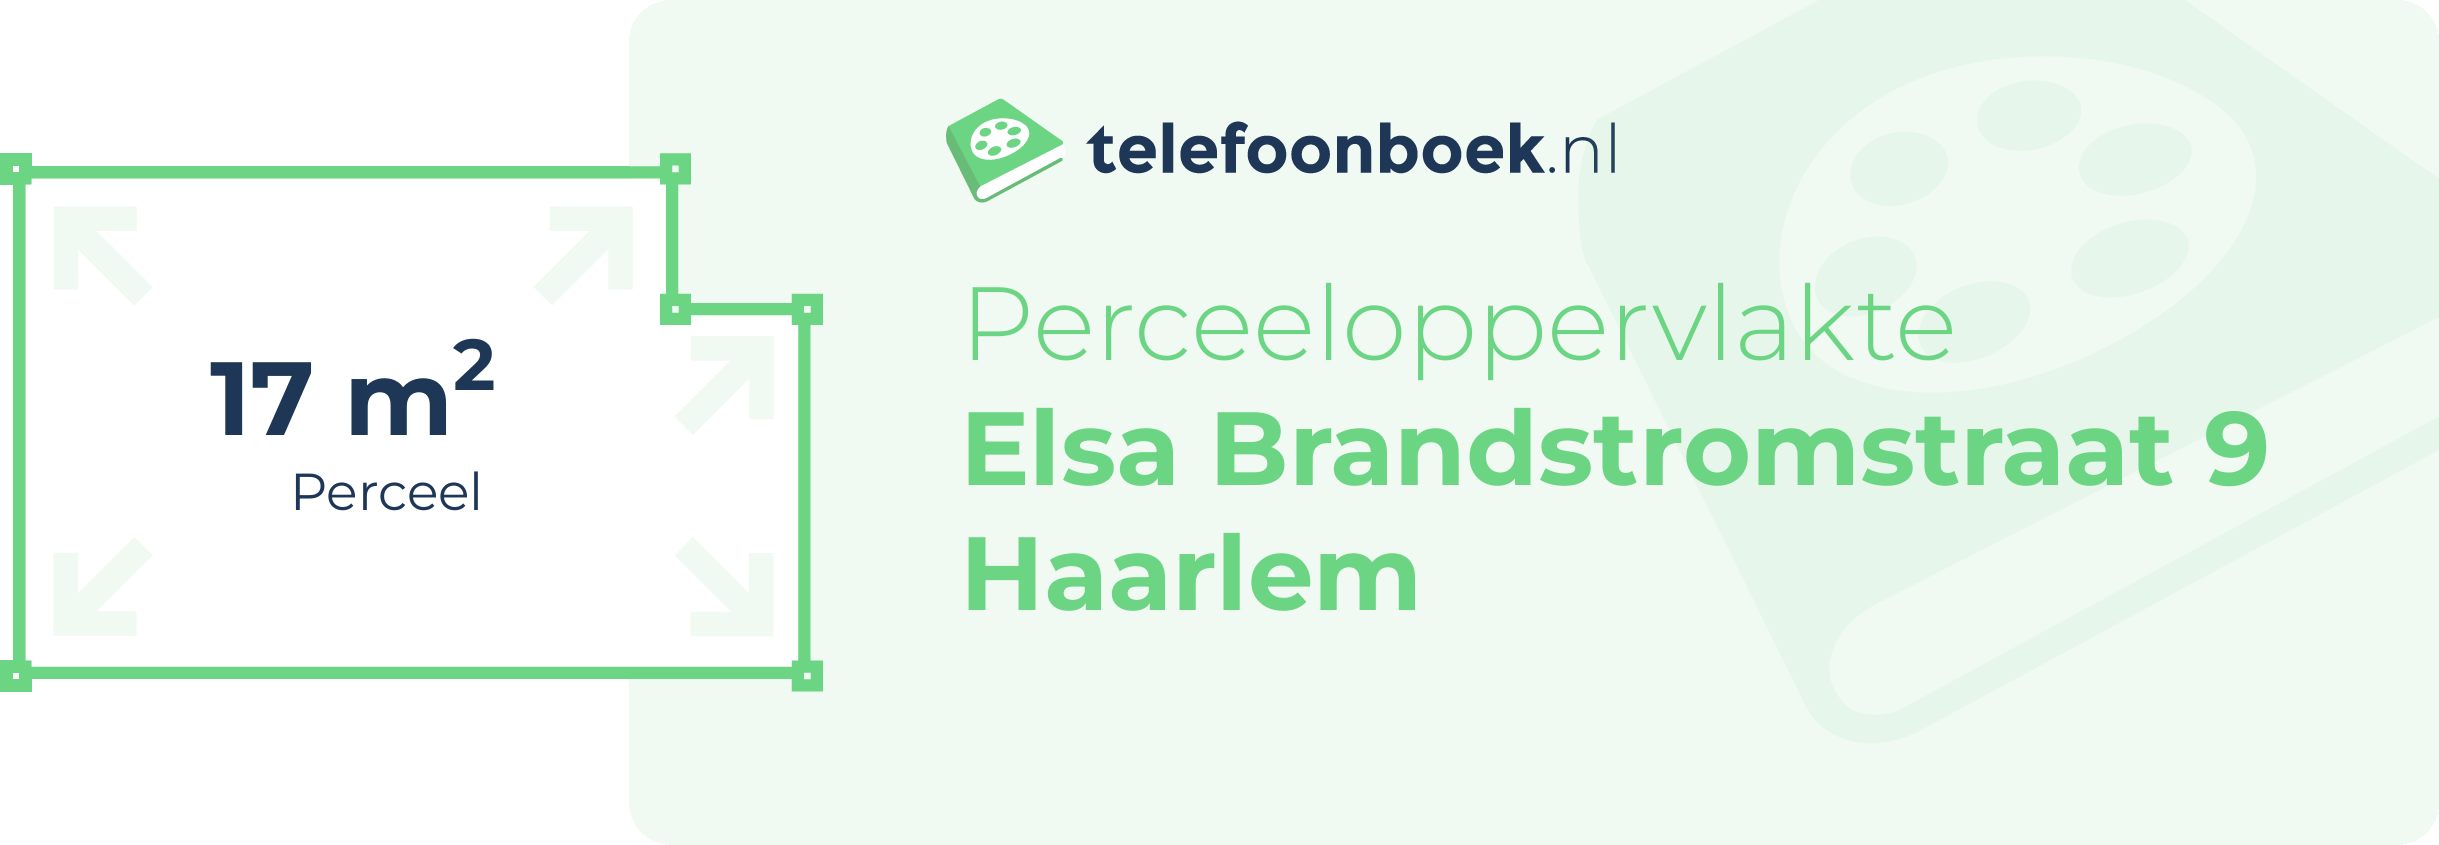 Perceeloppervlakte Elsa Brandstromstraat 9 Haarlem